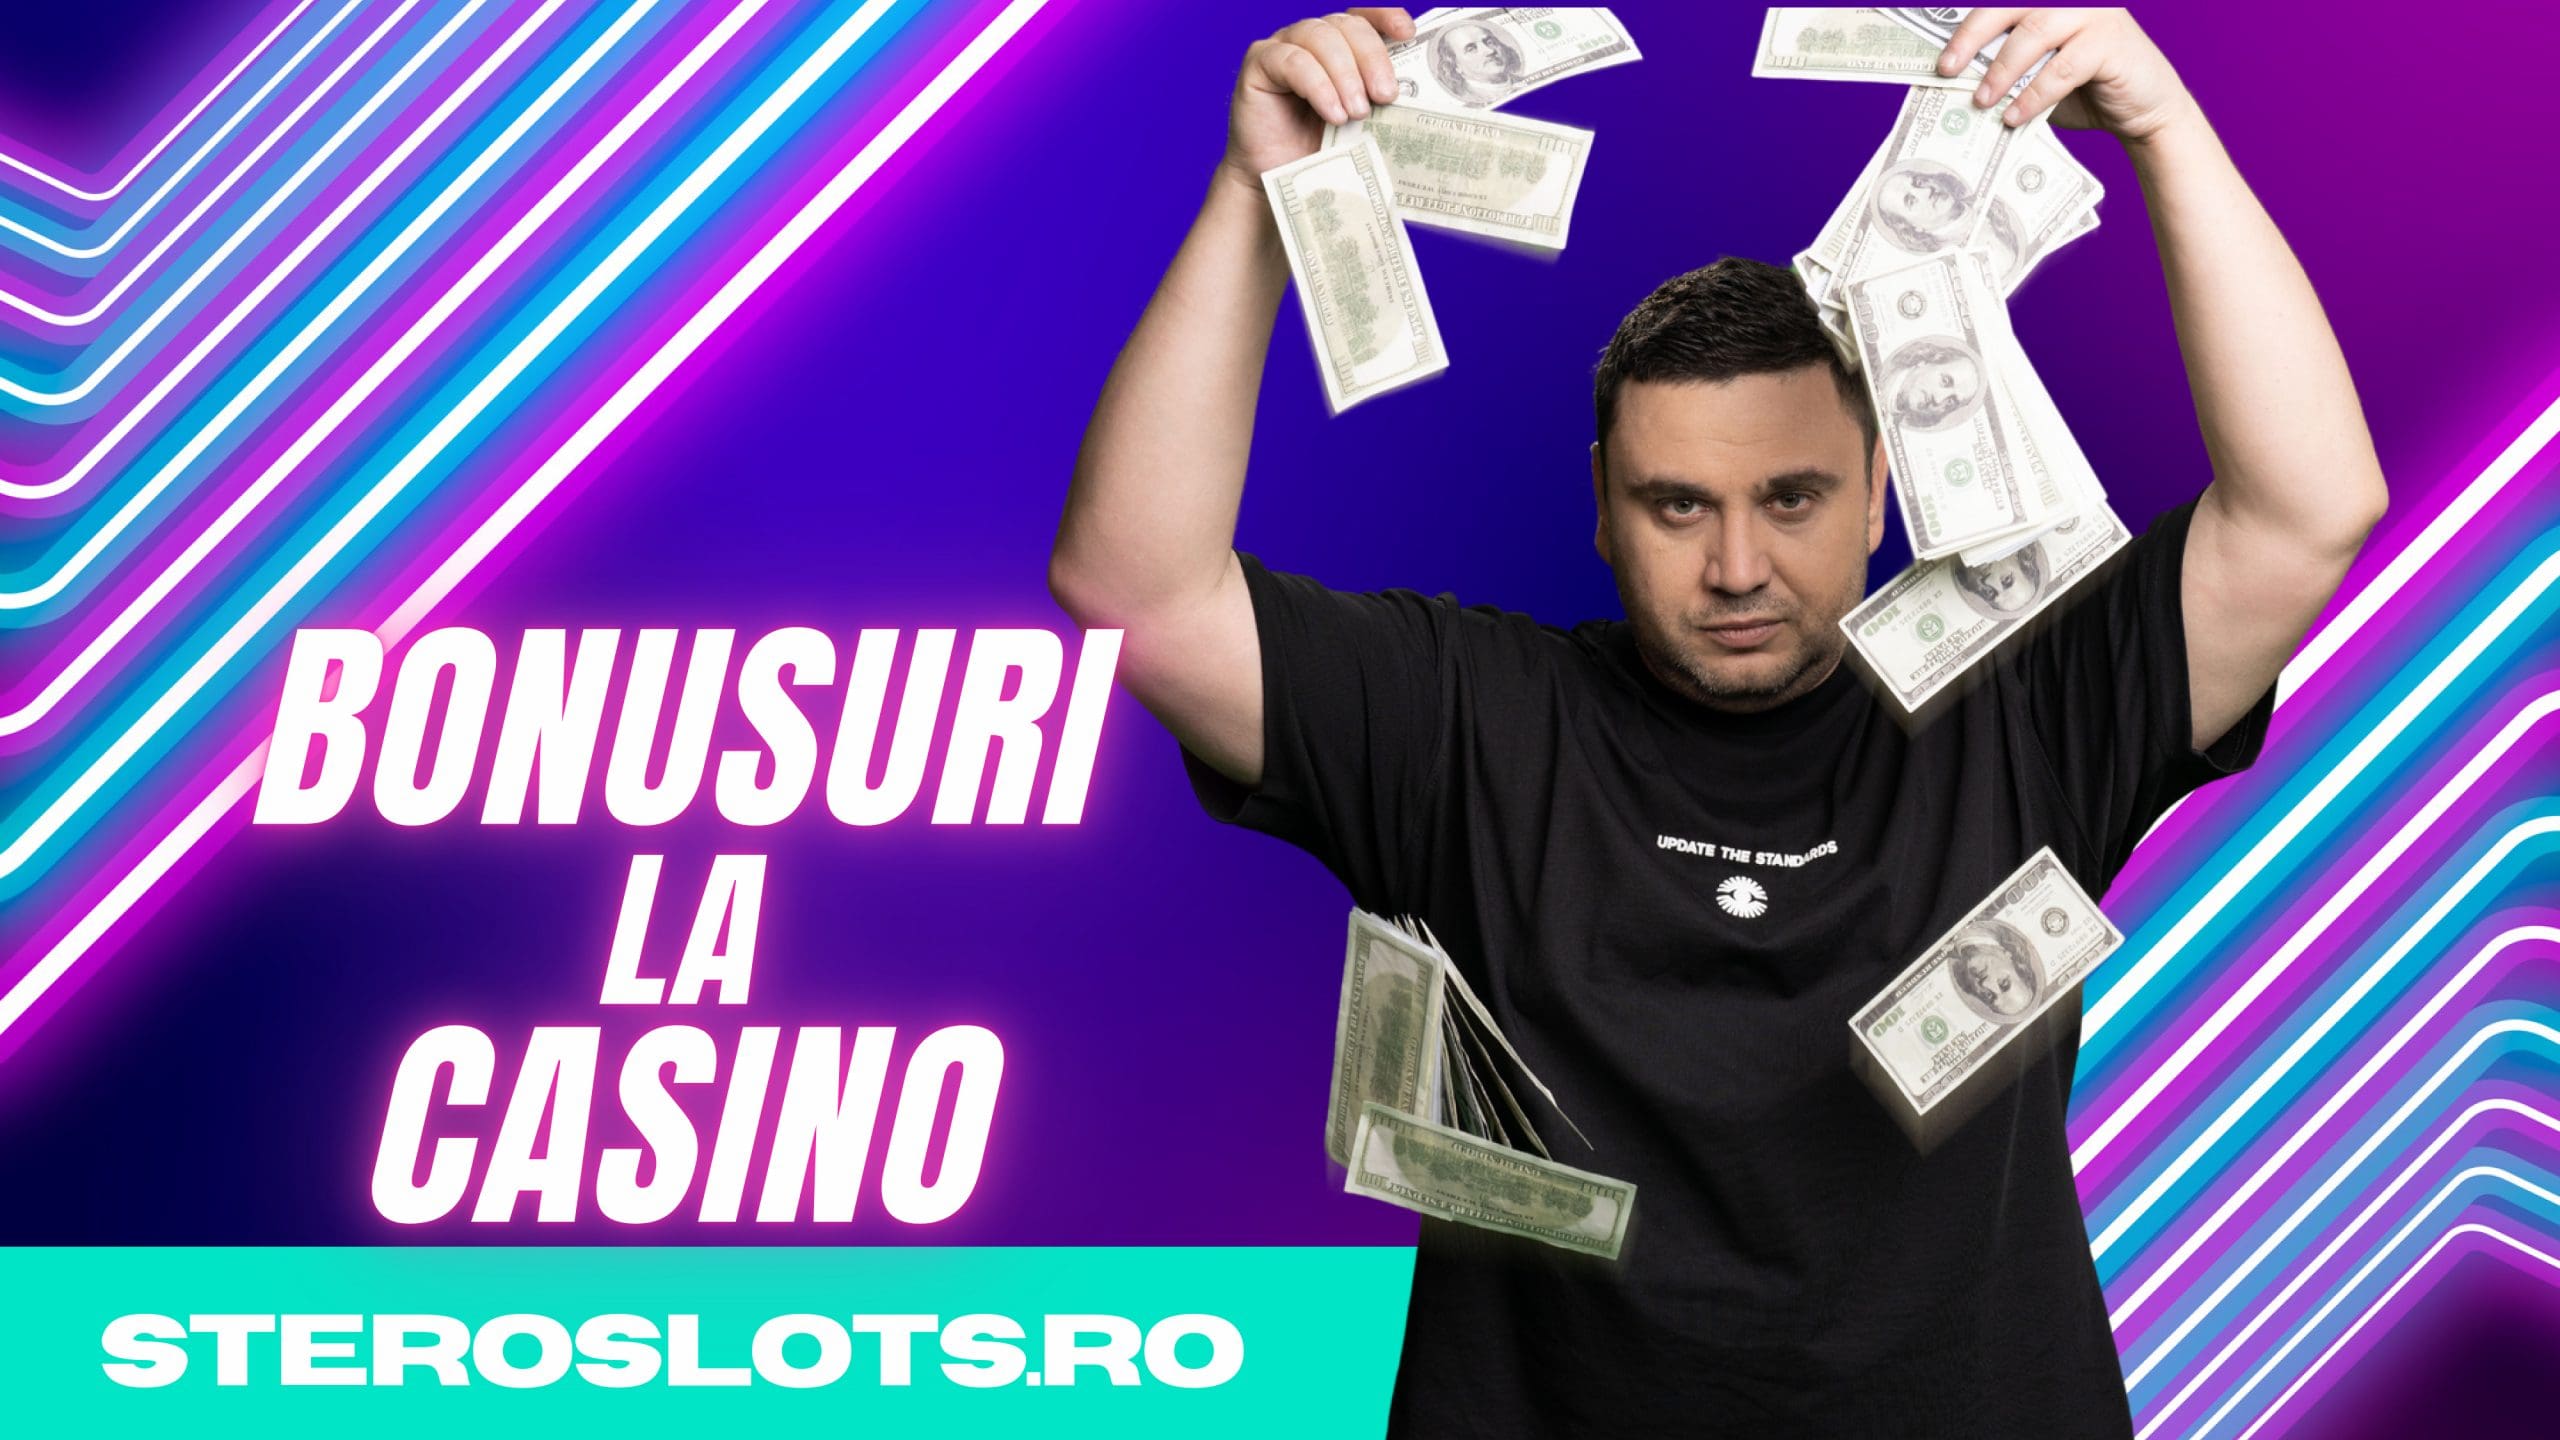 bonusuri-casino-stero-slots